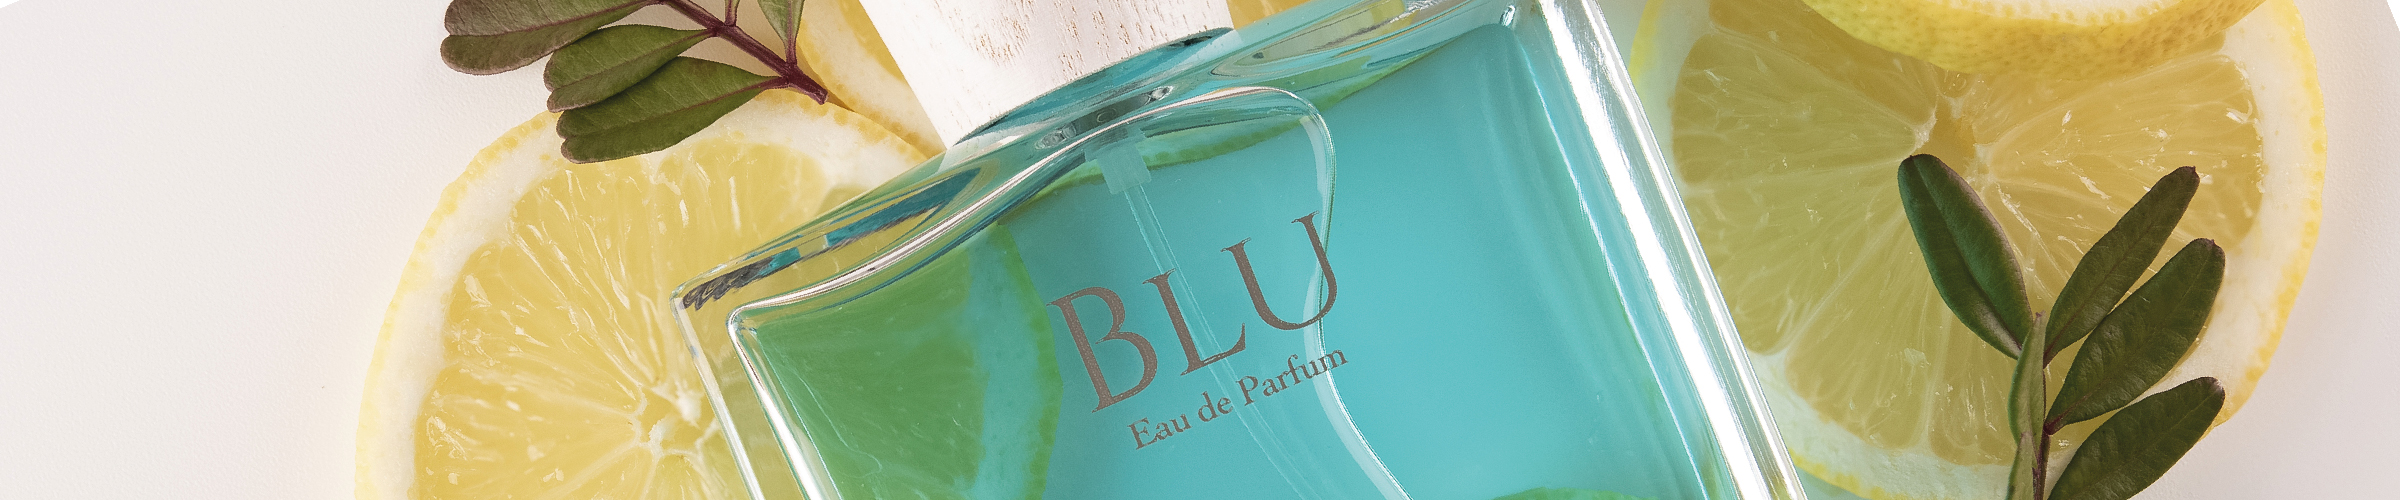 Eau de parfum Blu 100 ml Acqua degli Dei